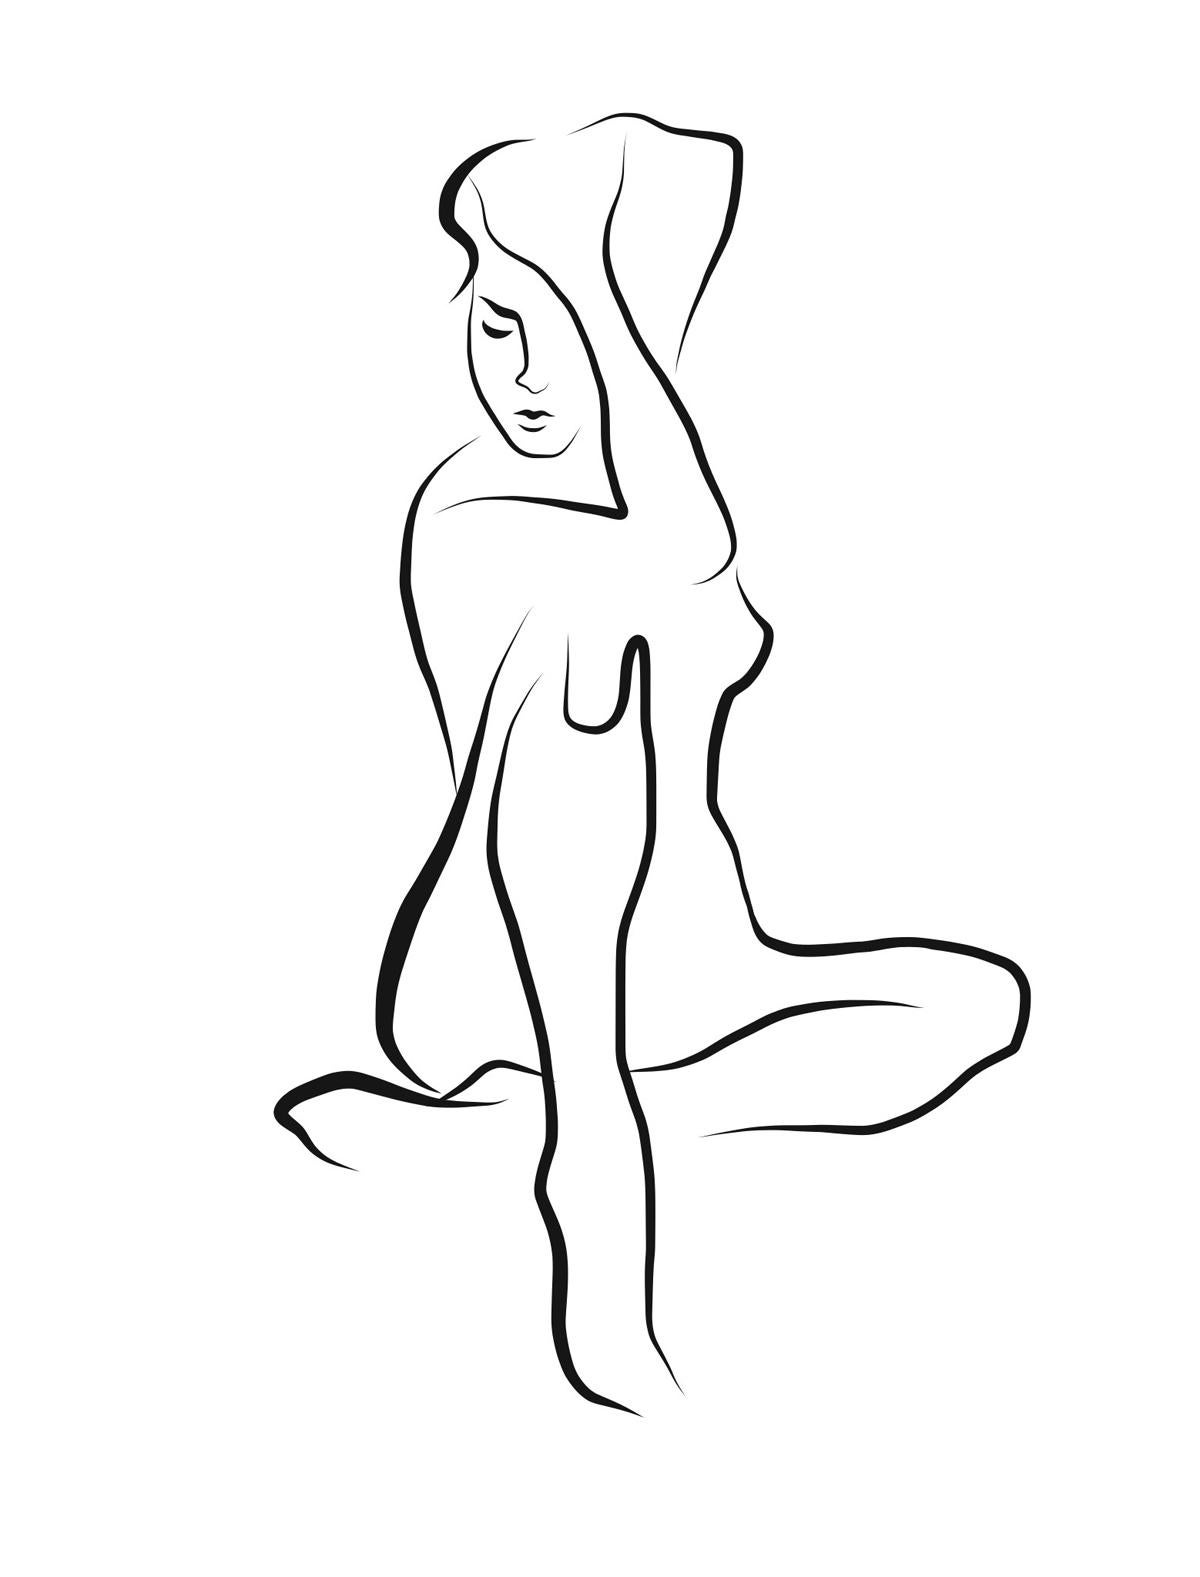 Haiku #41 - Dessin vectoriel numérique Femme assise Femme nue Figure Pensée profonde